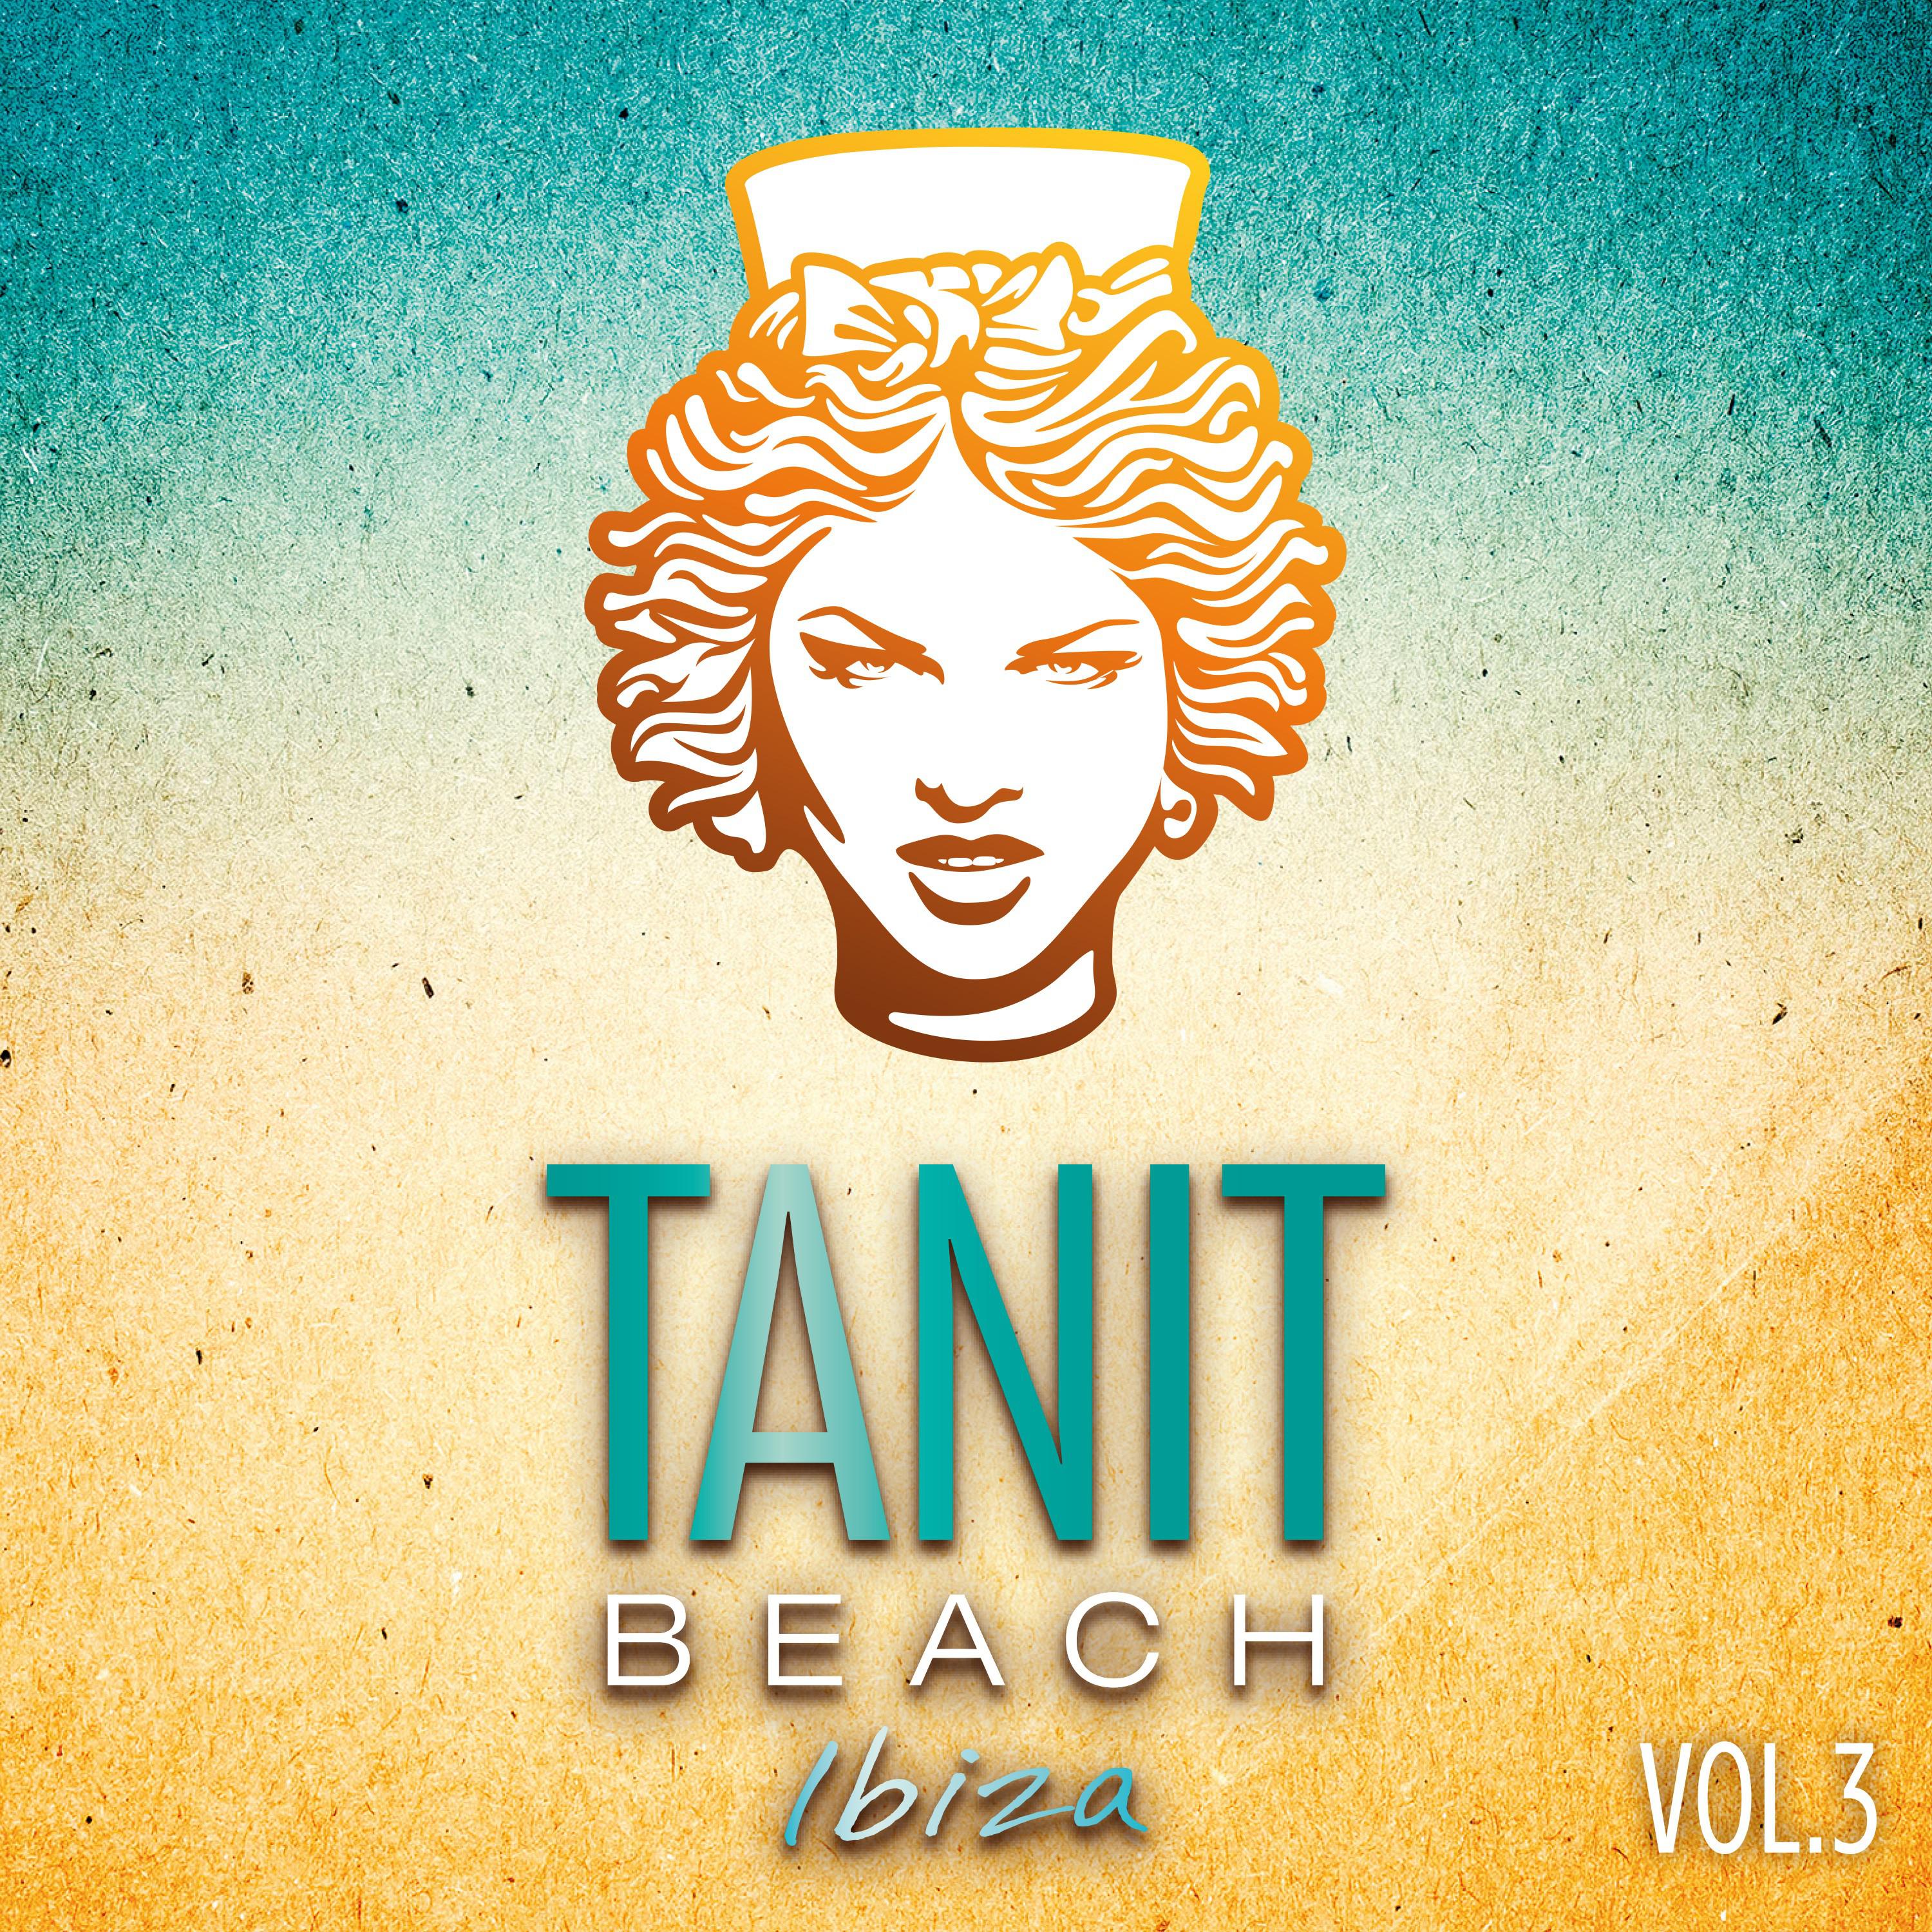 Tanit Beach Ibiza Vol. 3 Mix by Mariano Somoza